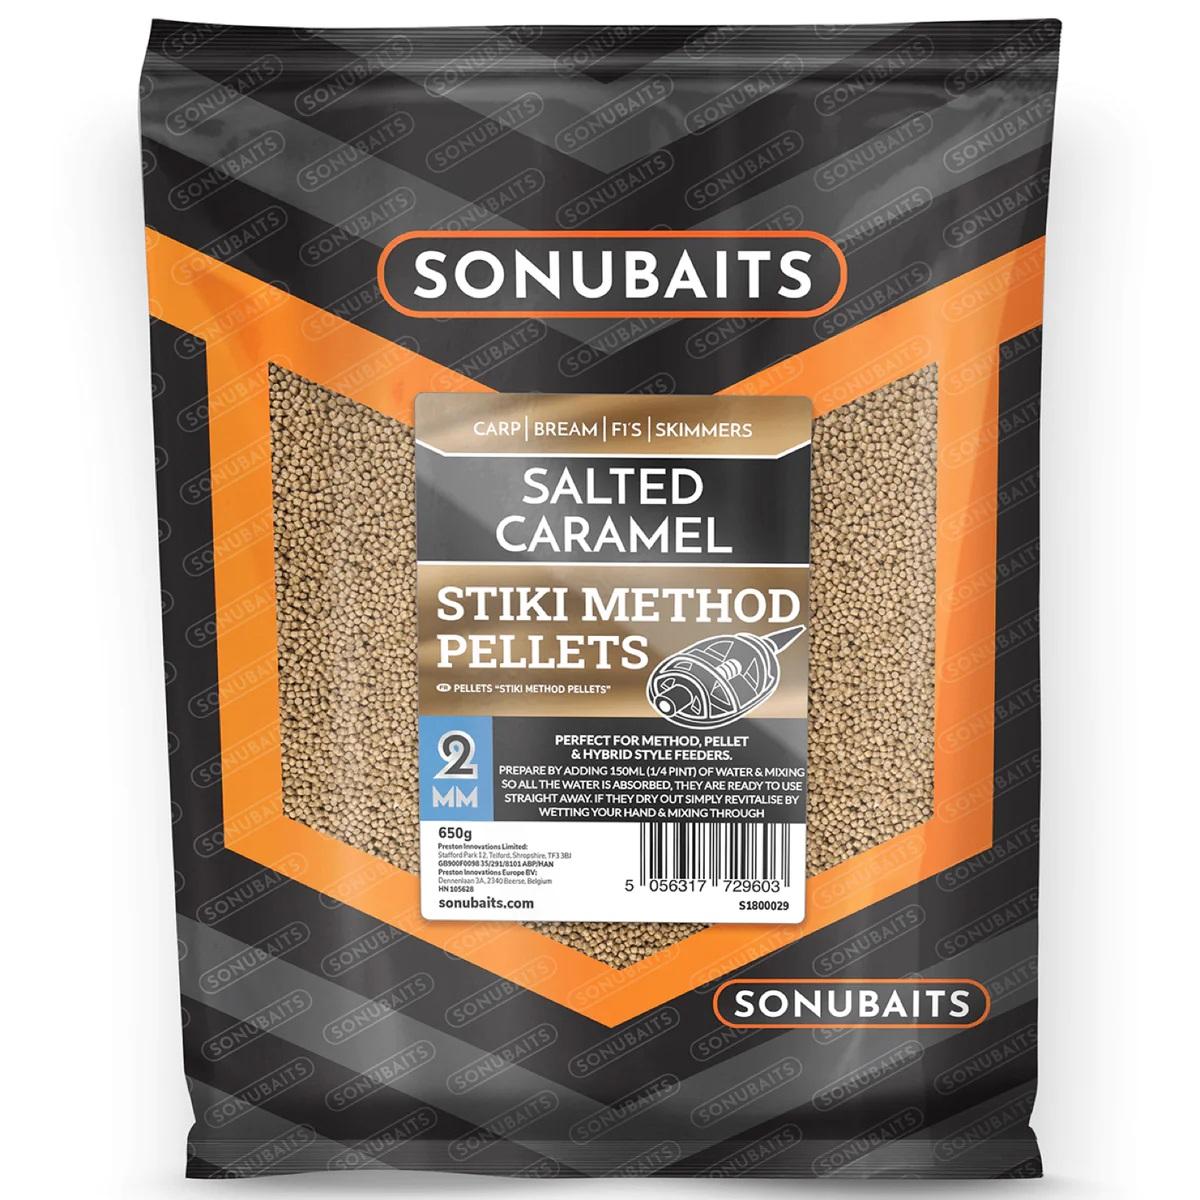 Sonubaits Stiki Method Pellets Salted Caramel 2mm